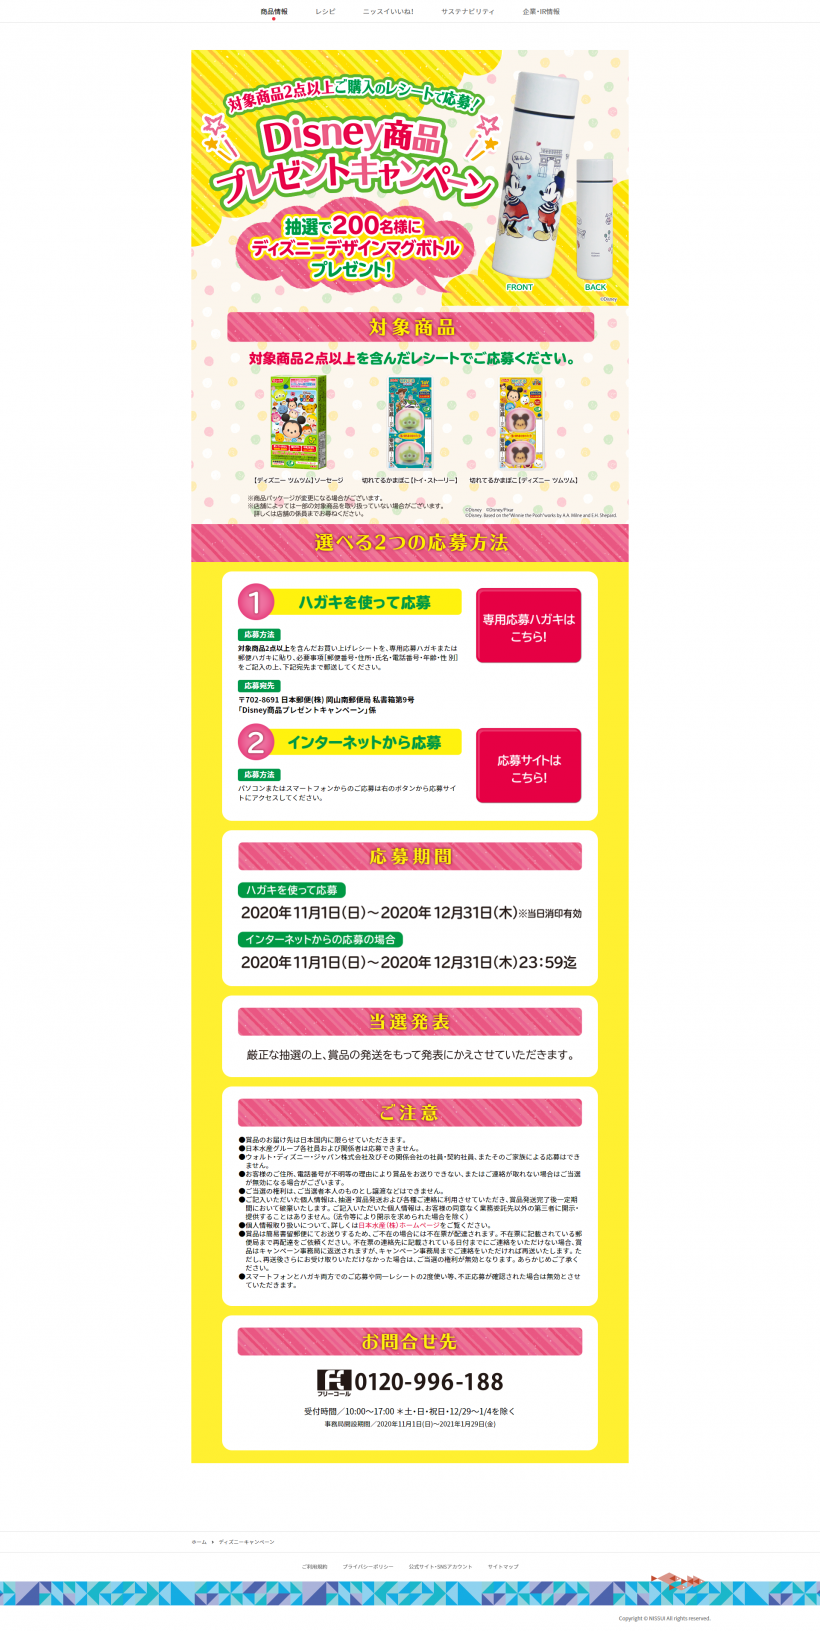 【日本水産株式会社】Disney商品プレゼントキャンペーン | キャンなび【WEBキャンペーンまとめサイト】